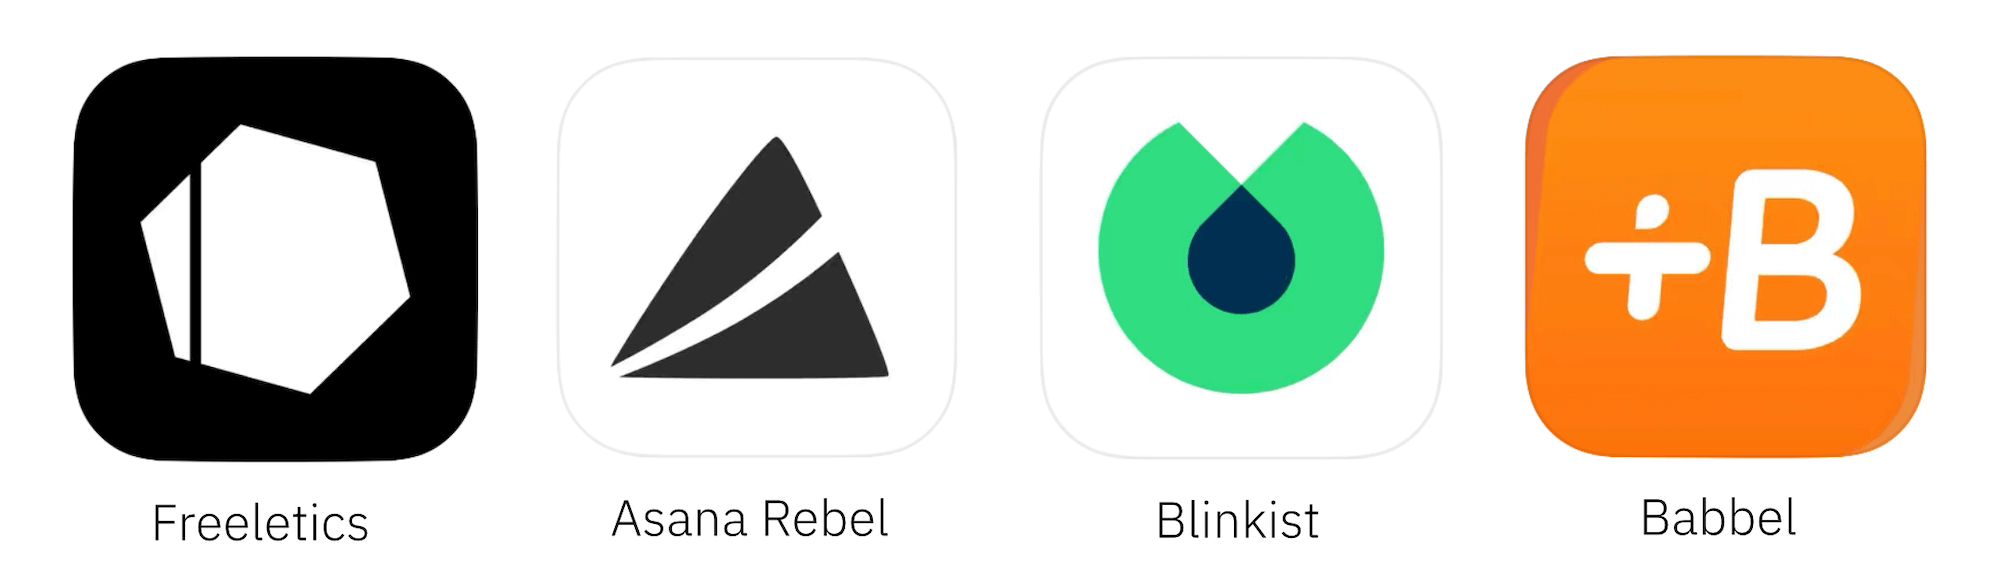 App Icons für In-App-Käufe von Abonnements